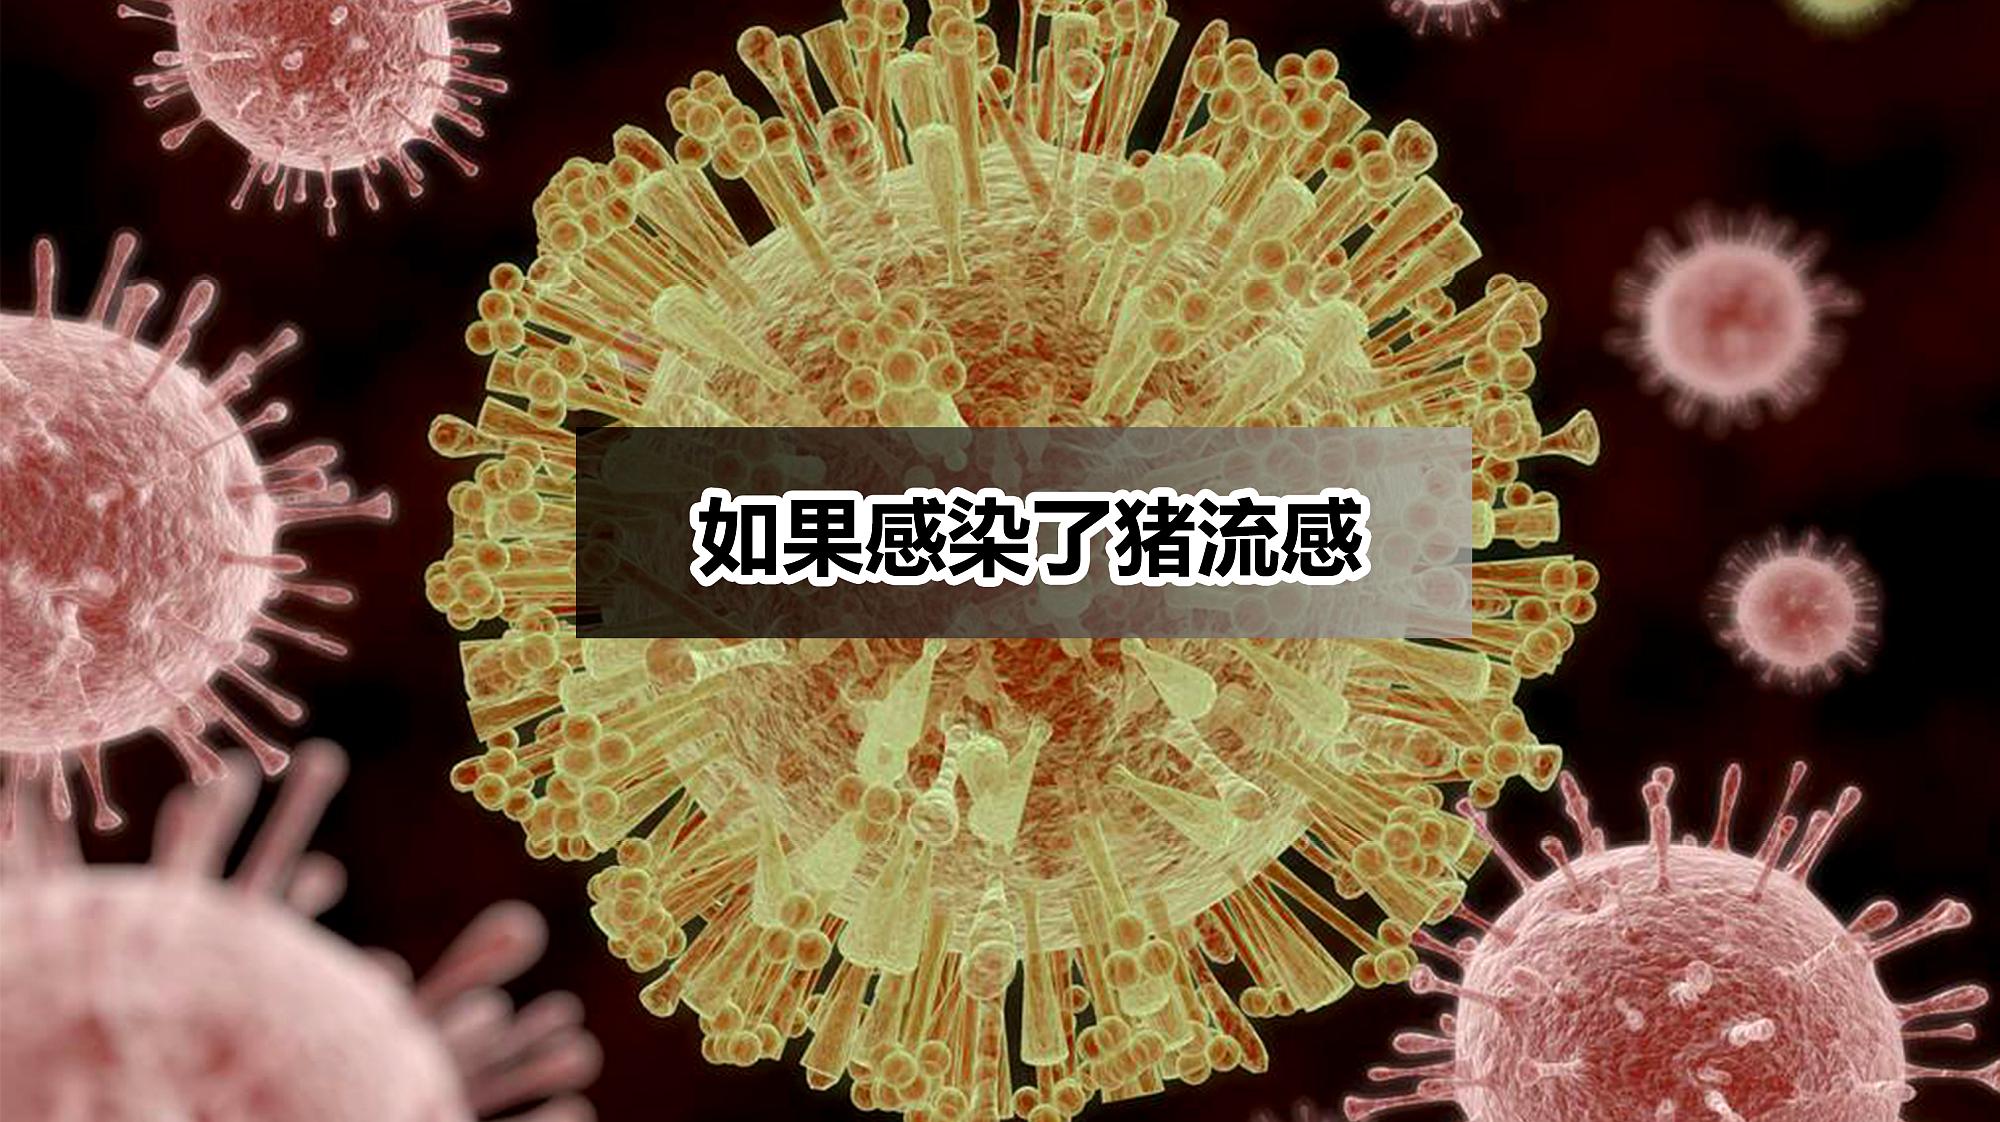 英国报告首例人感染H1N2病例 病毒与猪流感很相似